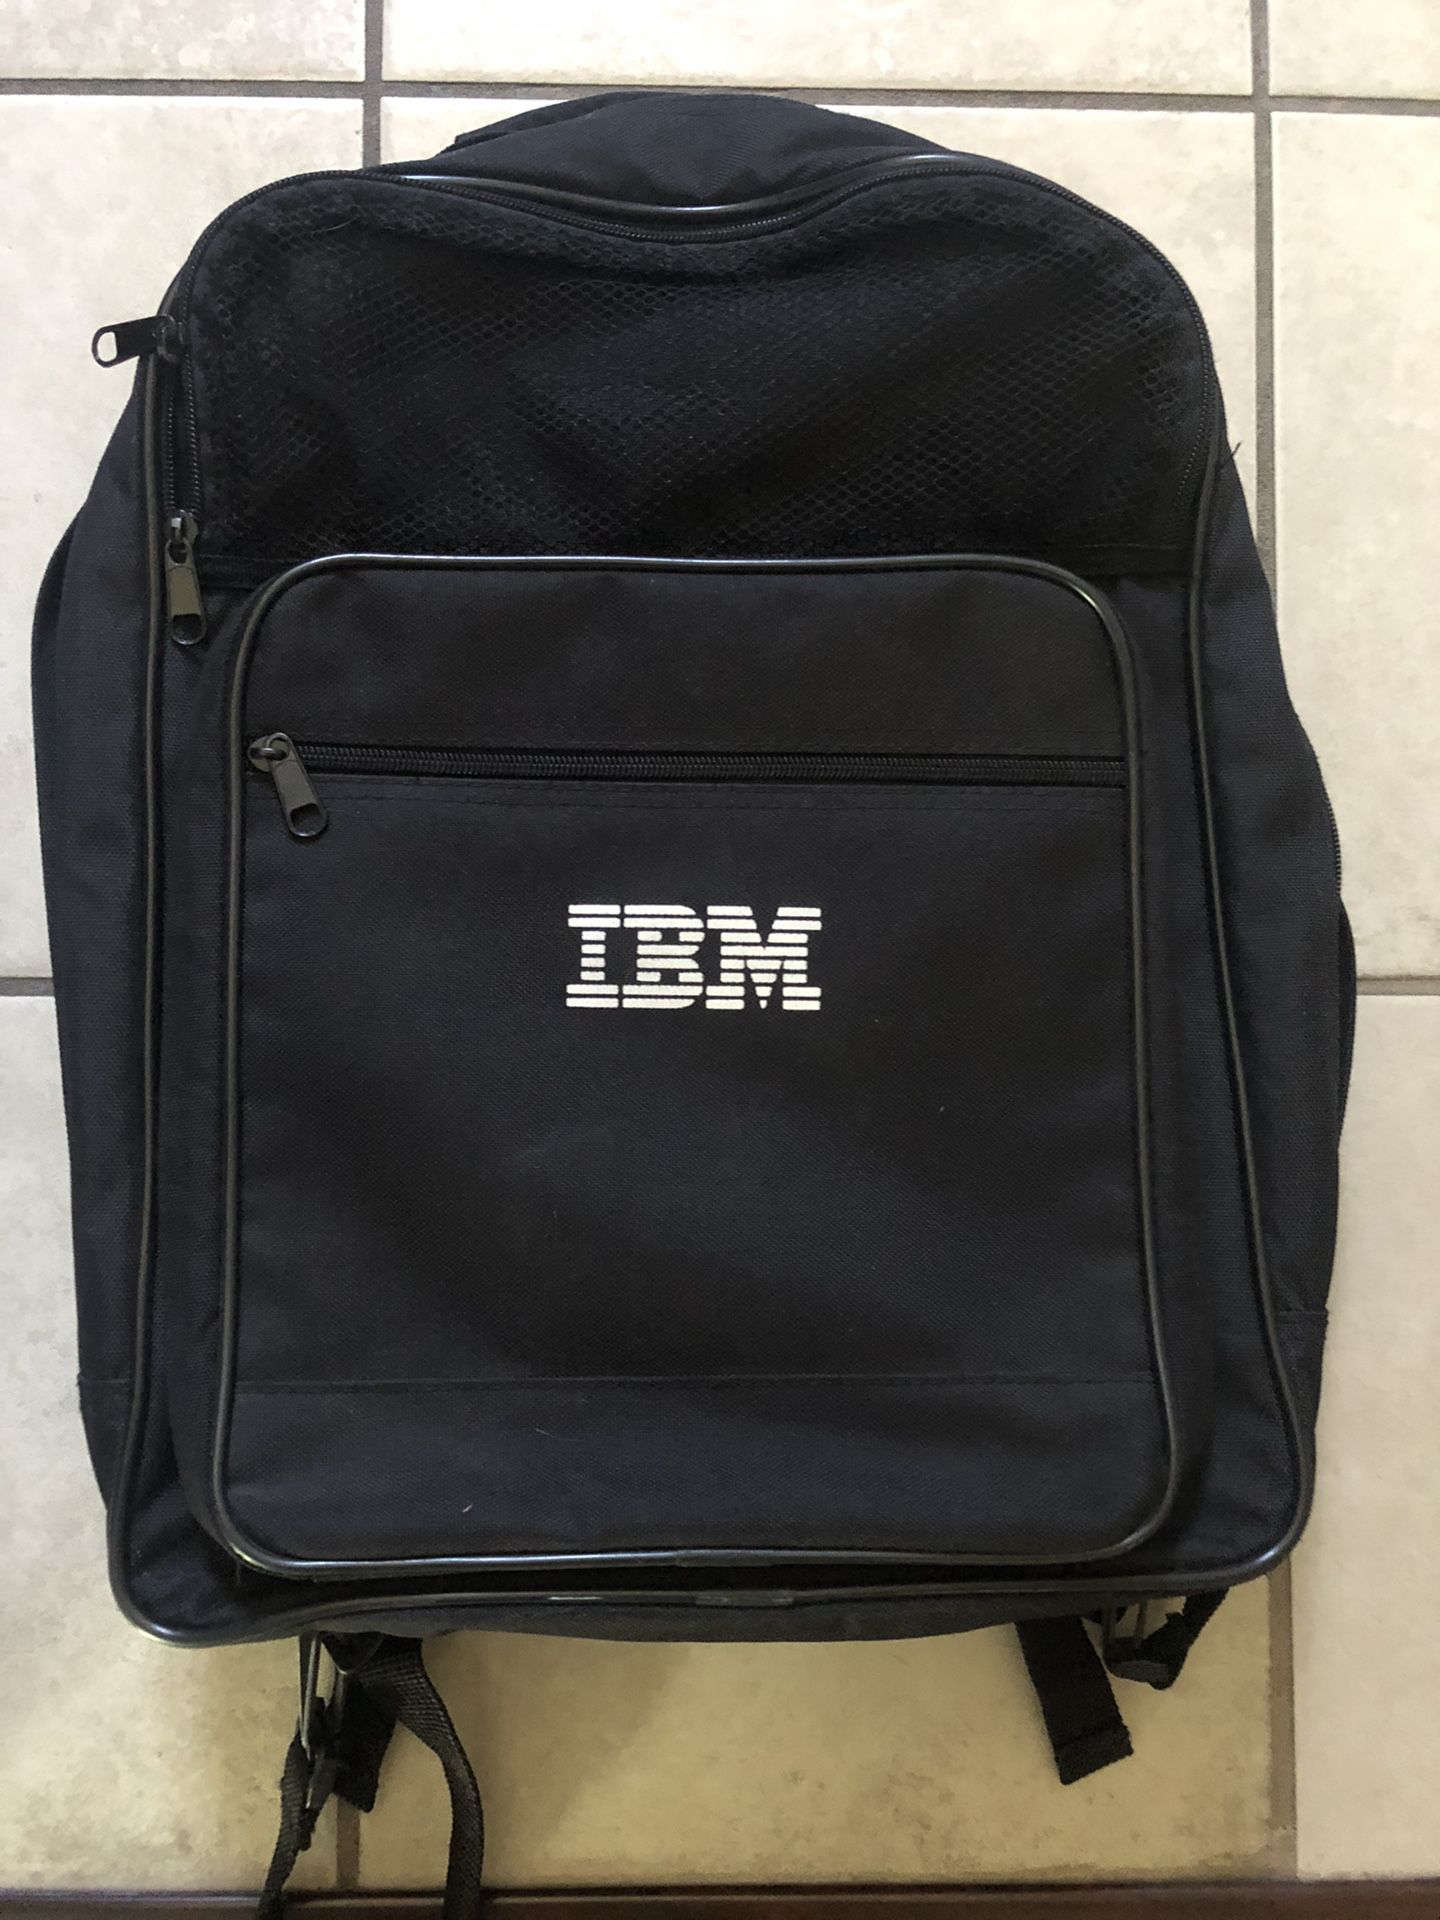 IBM Laptop Computer backpack 